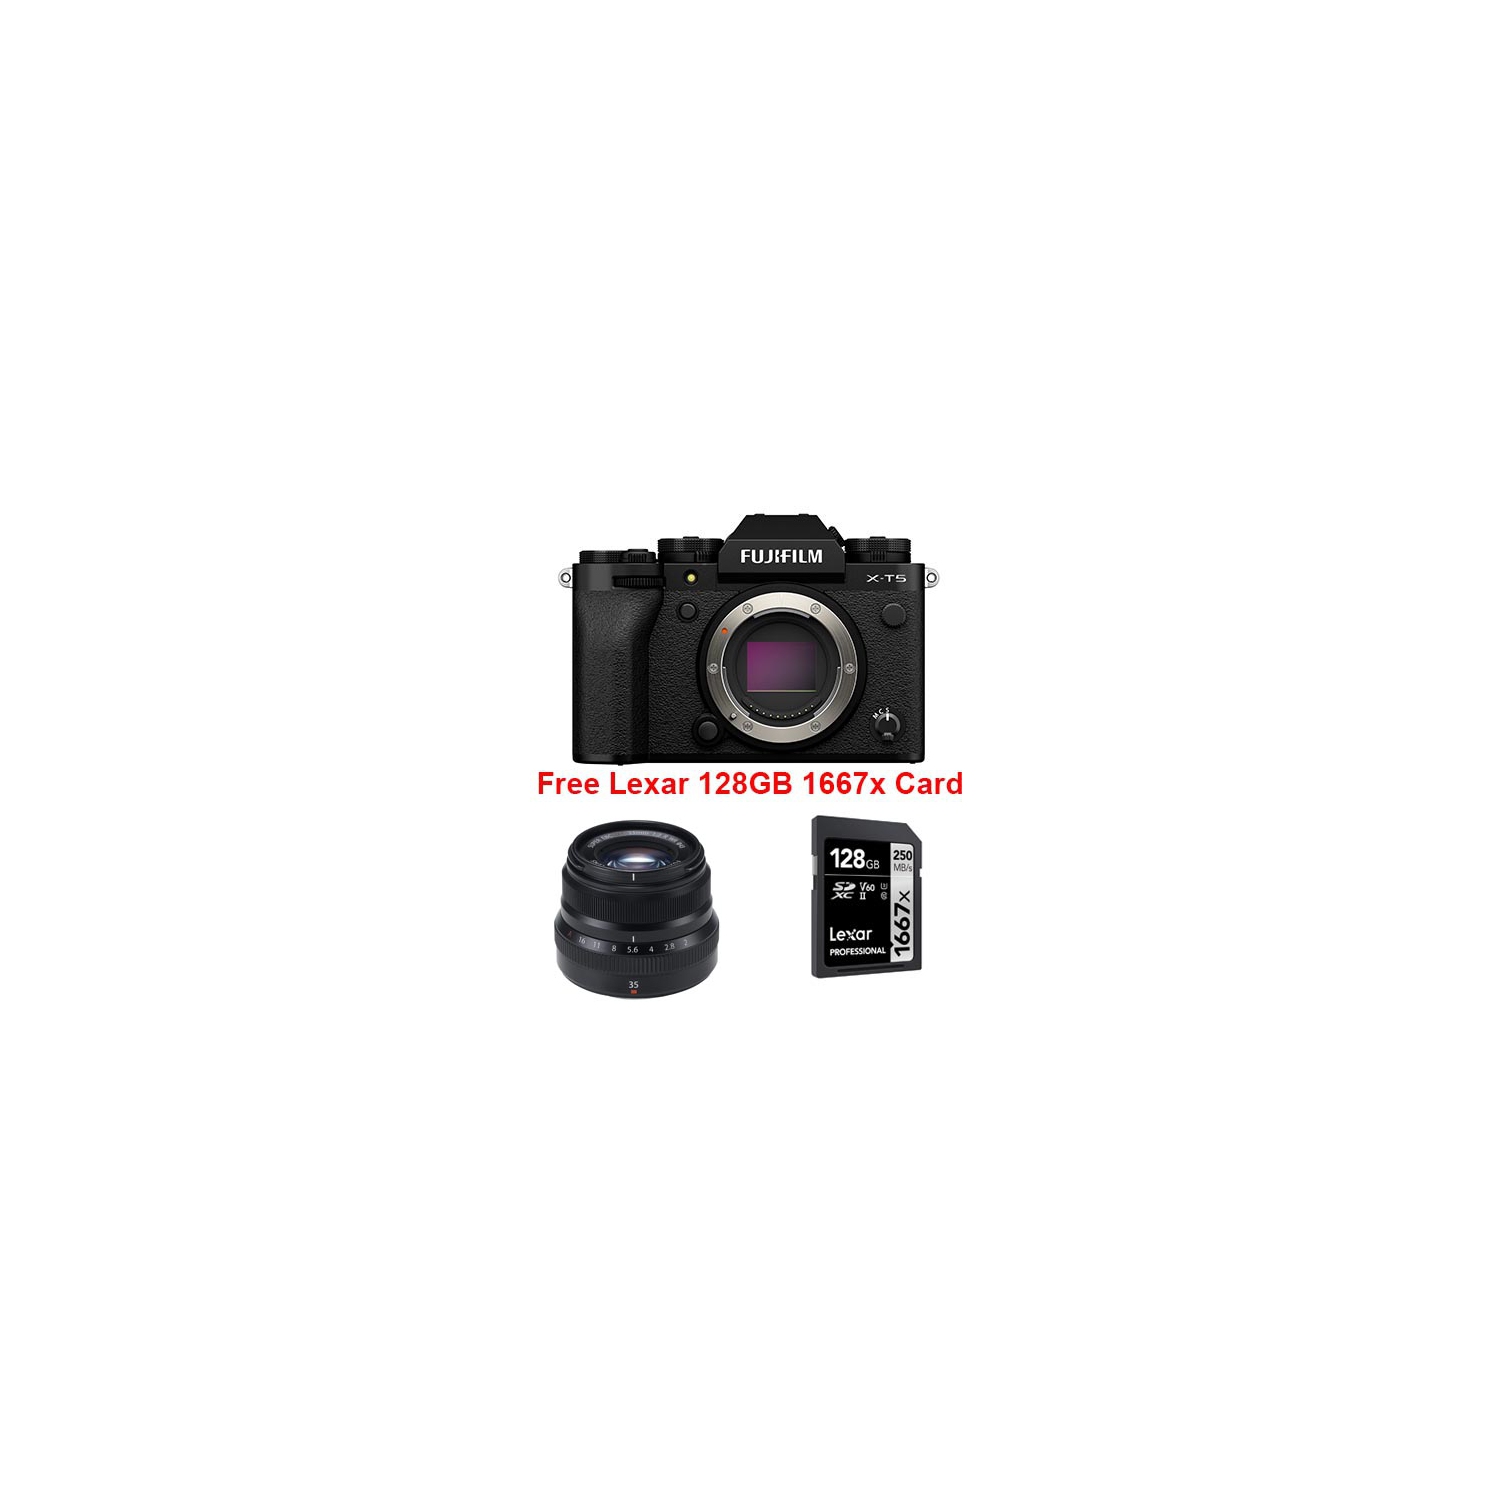 Fujifilm X-T5 Bundle Black Body with XF 35mm f2 WR #600015904+ Lexar 128GB 1667x SD Card